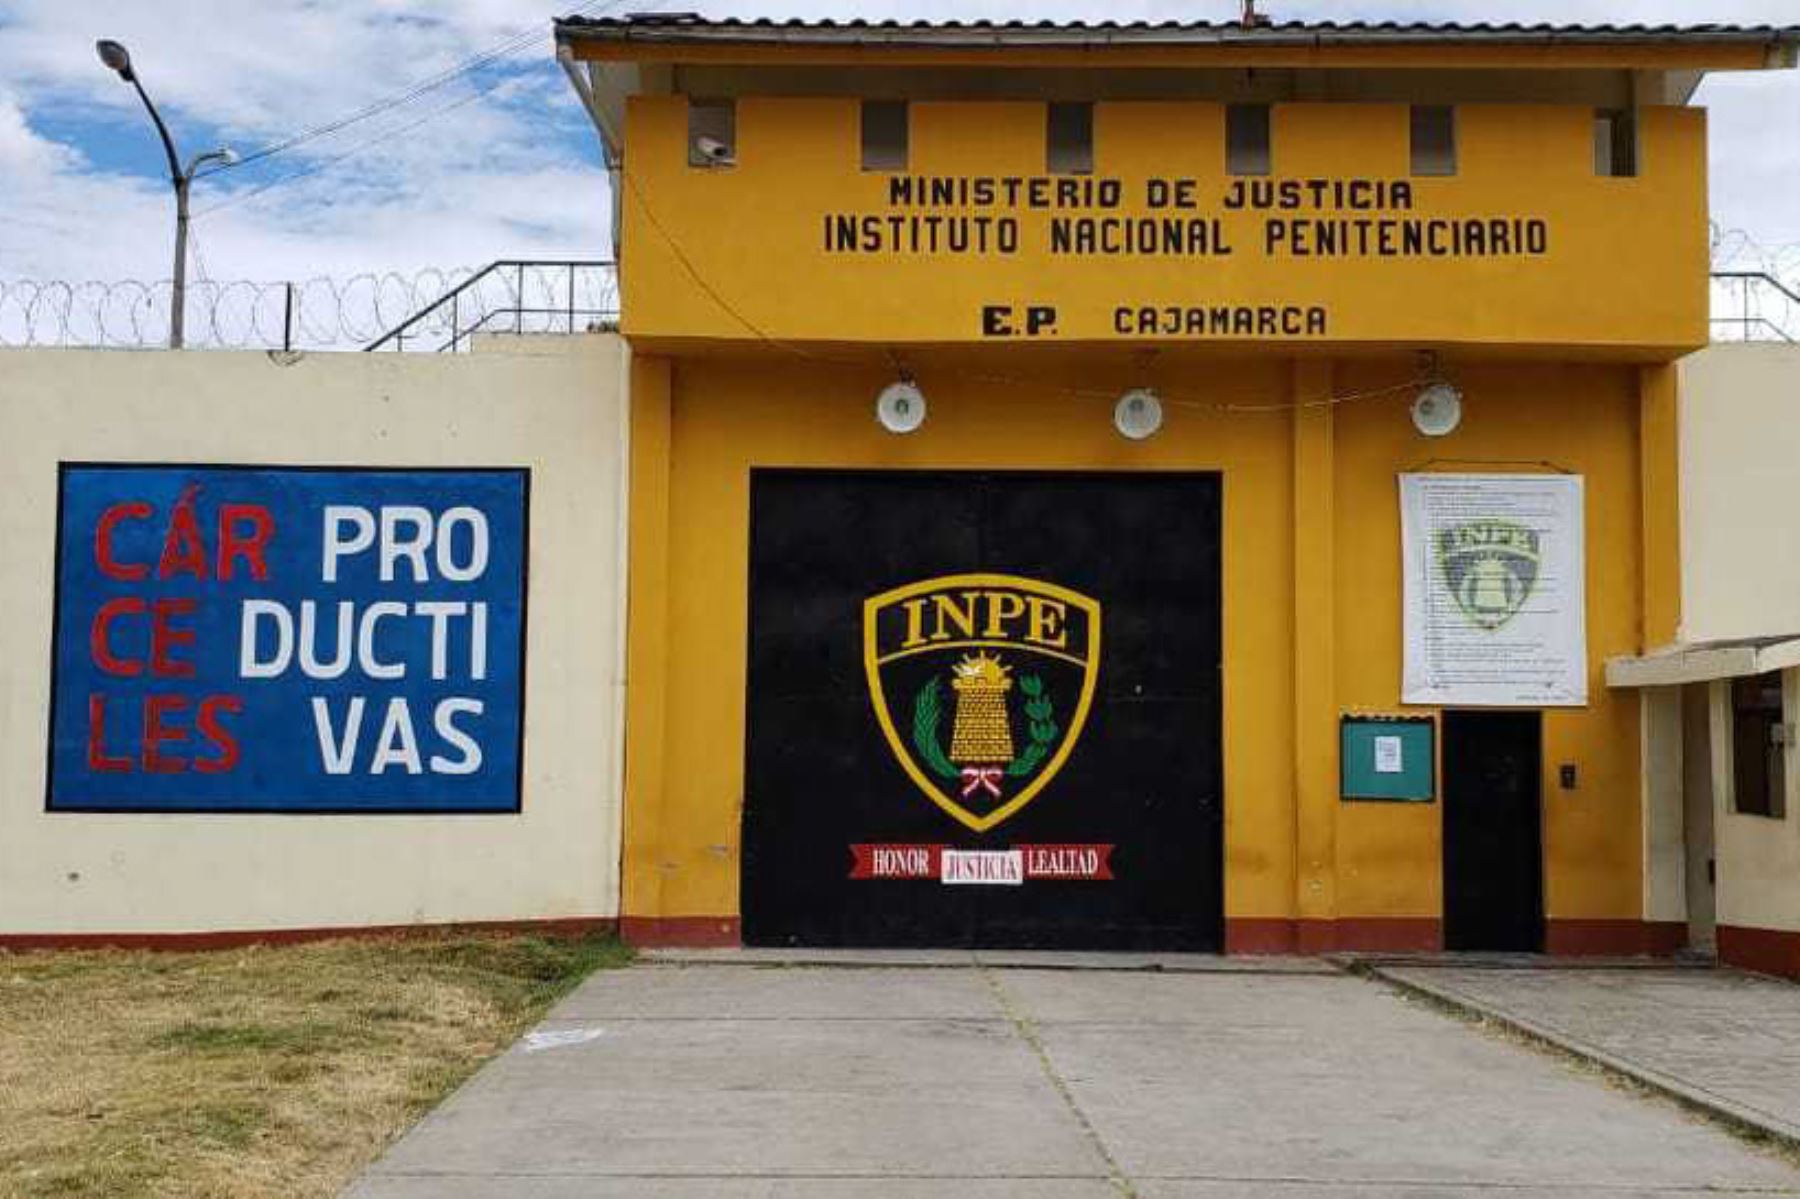 El Instituto Nacional Penitenciario (Inpe) precisó hoy las acciones ejecutadas para construir dos pabellones que amplíen en 432 plazas la capacidad de albergue del penal de Cajamarca, dado que si bien se proyectó para 888 internos, actualmente acoge a 1,547 personas privadas de su libertad.